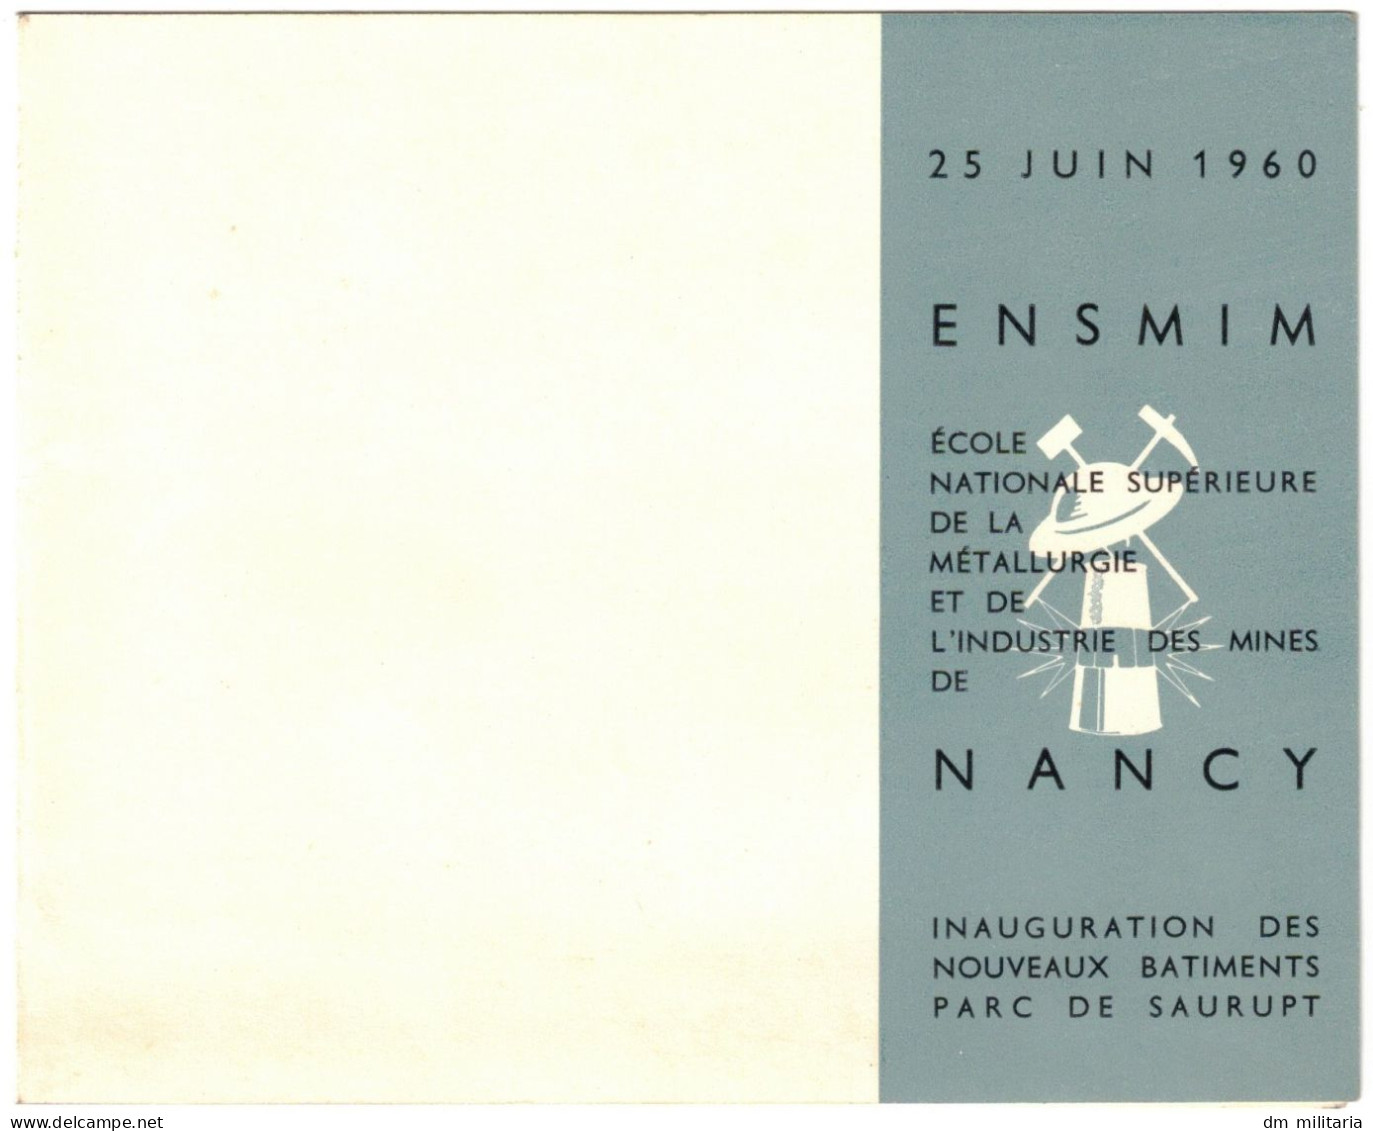 54 - CARTE D'INVITATION 1960 : ENSMIM ÉCOLE NATIONALE SUPÉRIEURE DE LA MÉTALLURGIE ET DE L'INDUSTRIE DES MINES DE NANCY - Unclassified